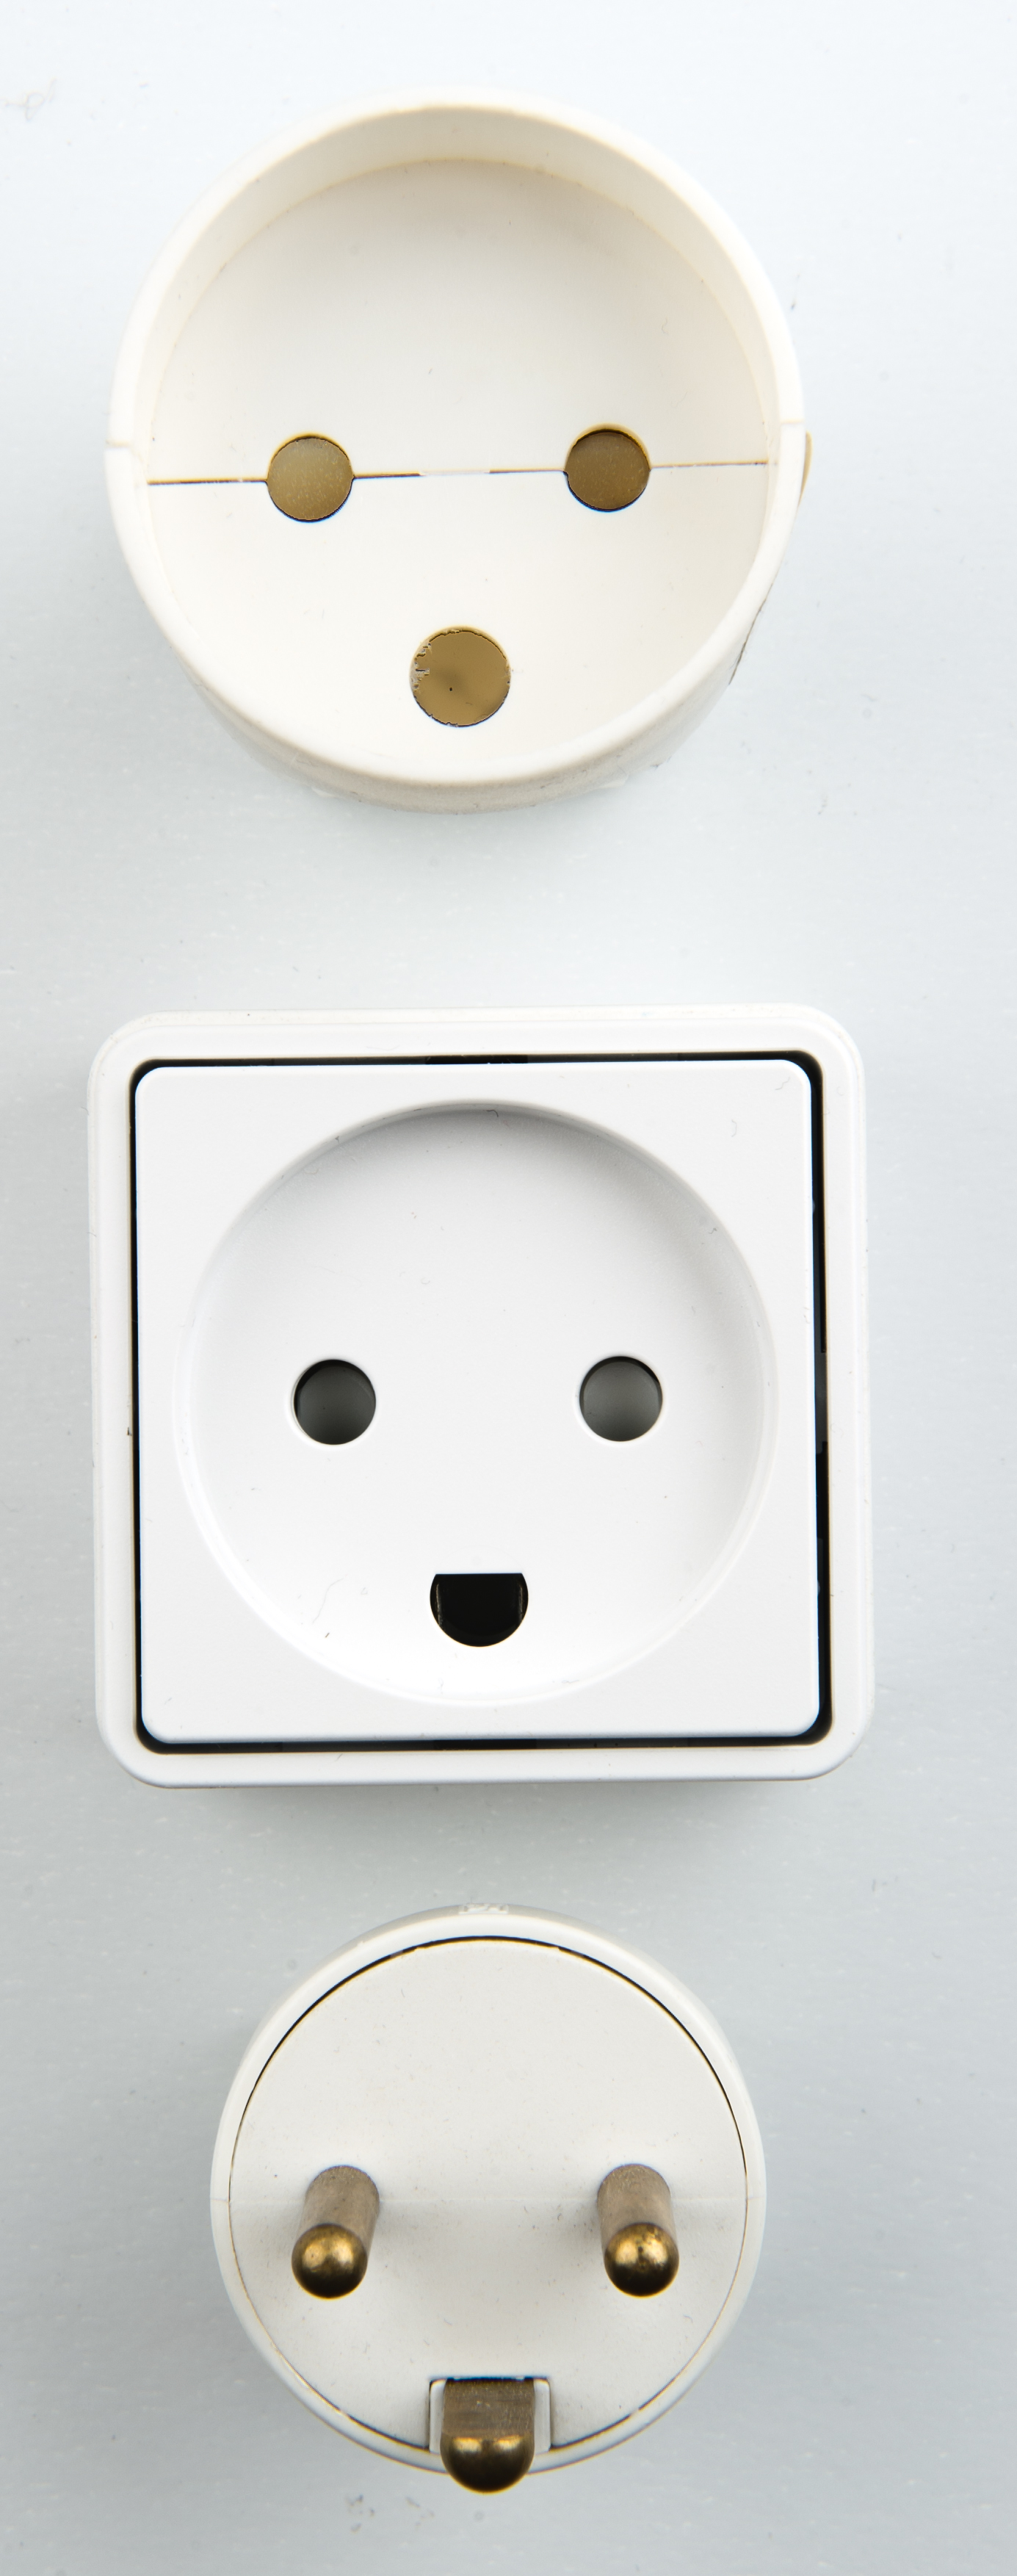 Datei:Danish electrical plugs.jpg